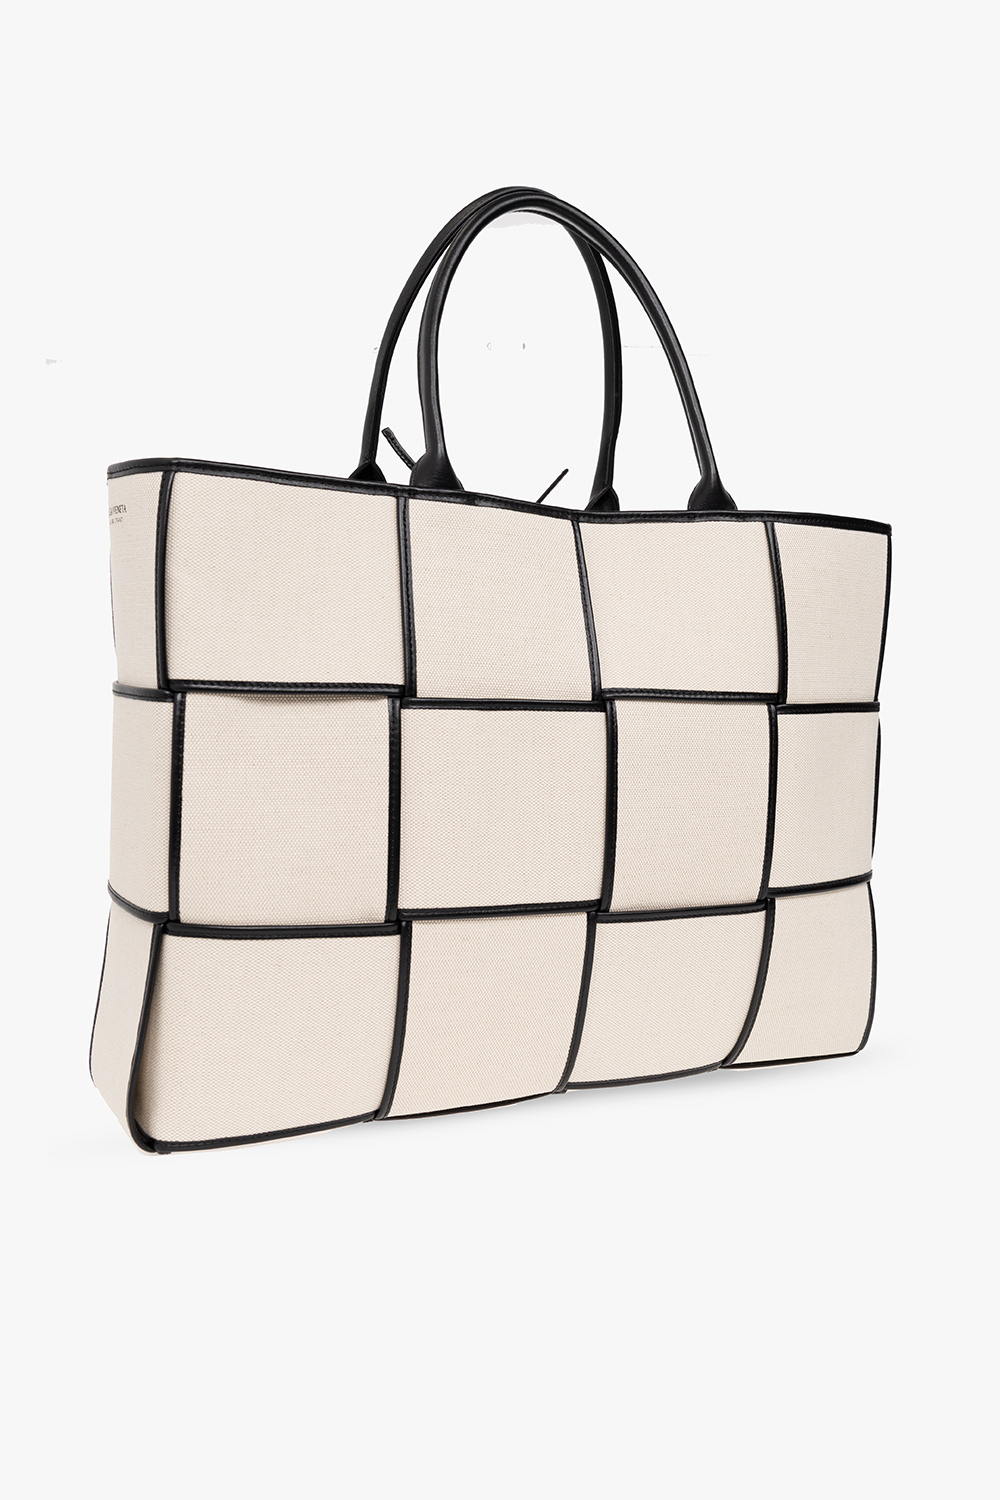 bottega knitted Veneta ‘Arco Large’ shopper bag